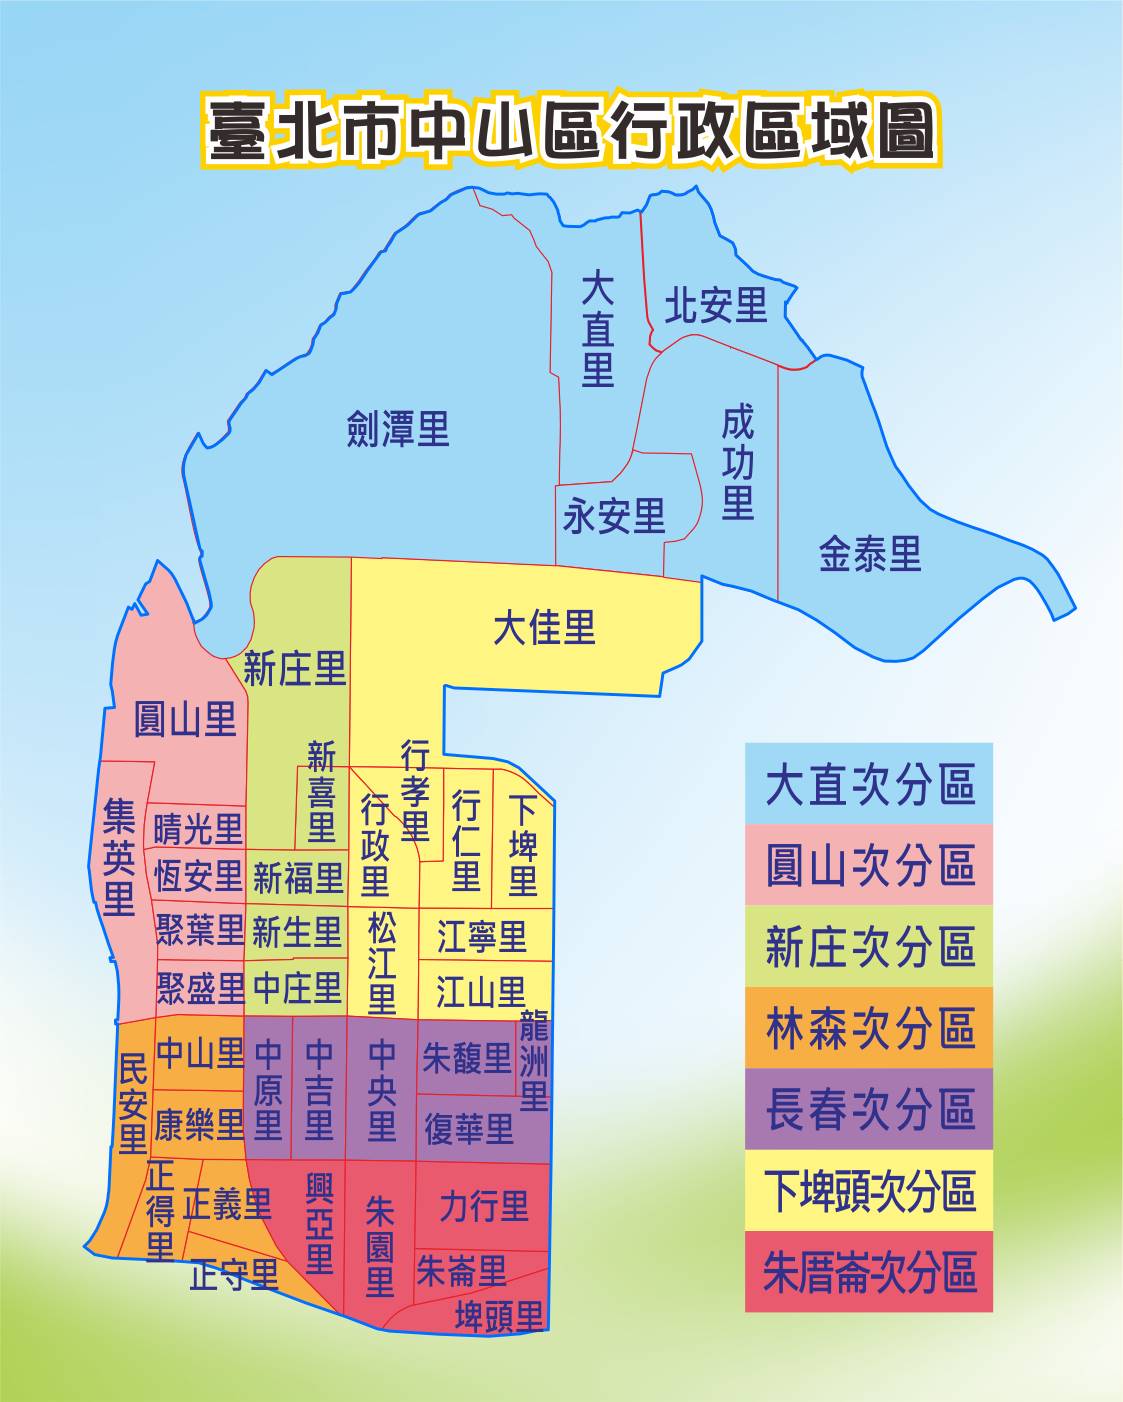 台北市中山區包含大直次分區。